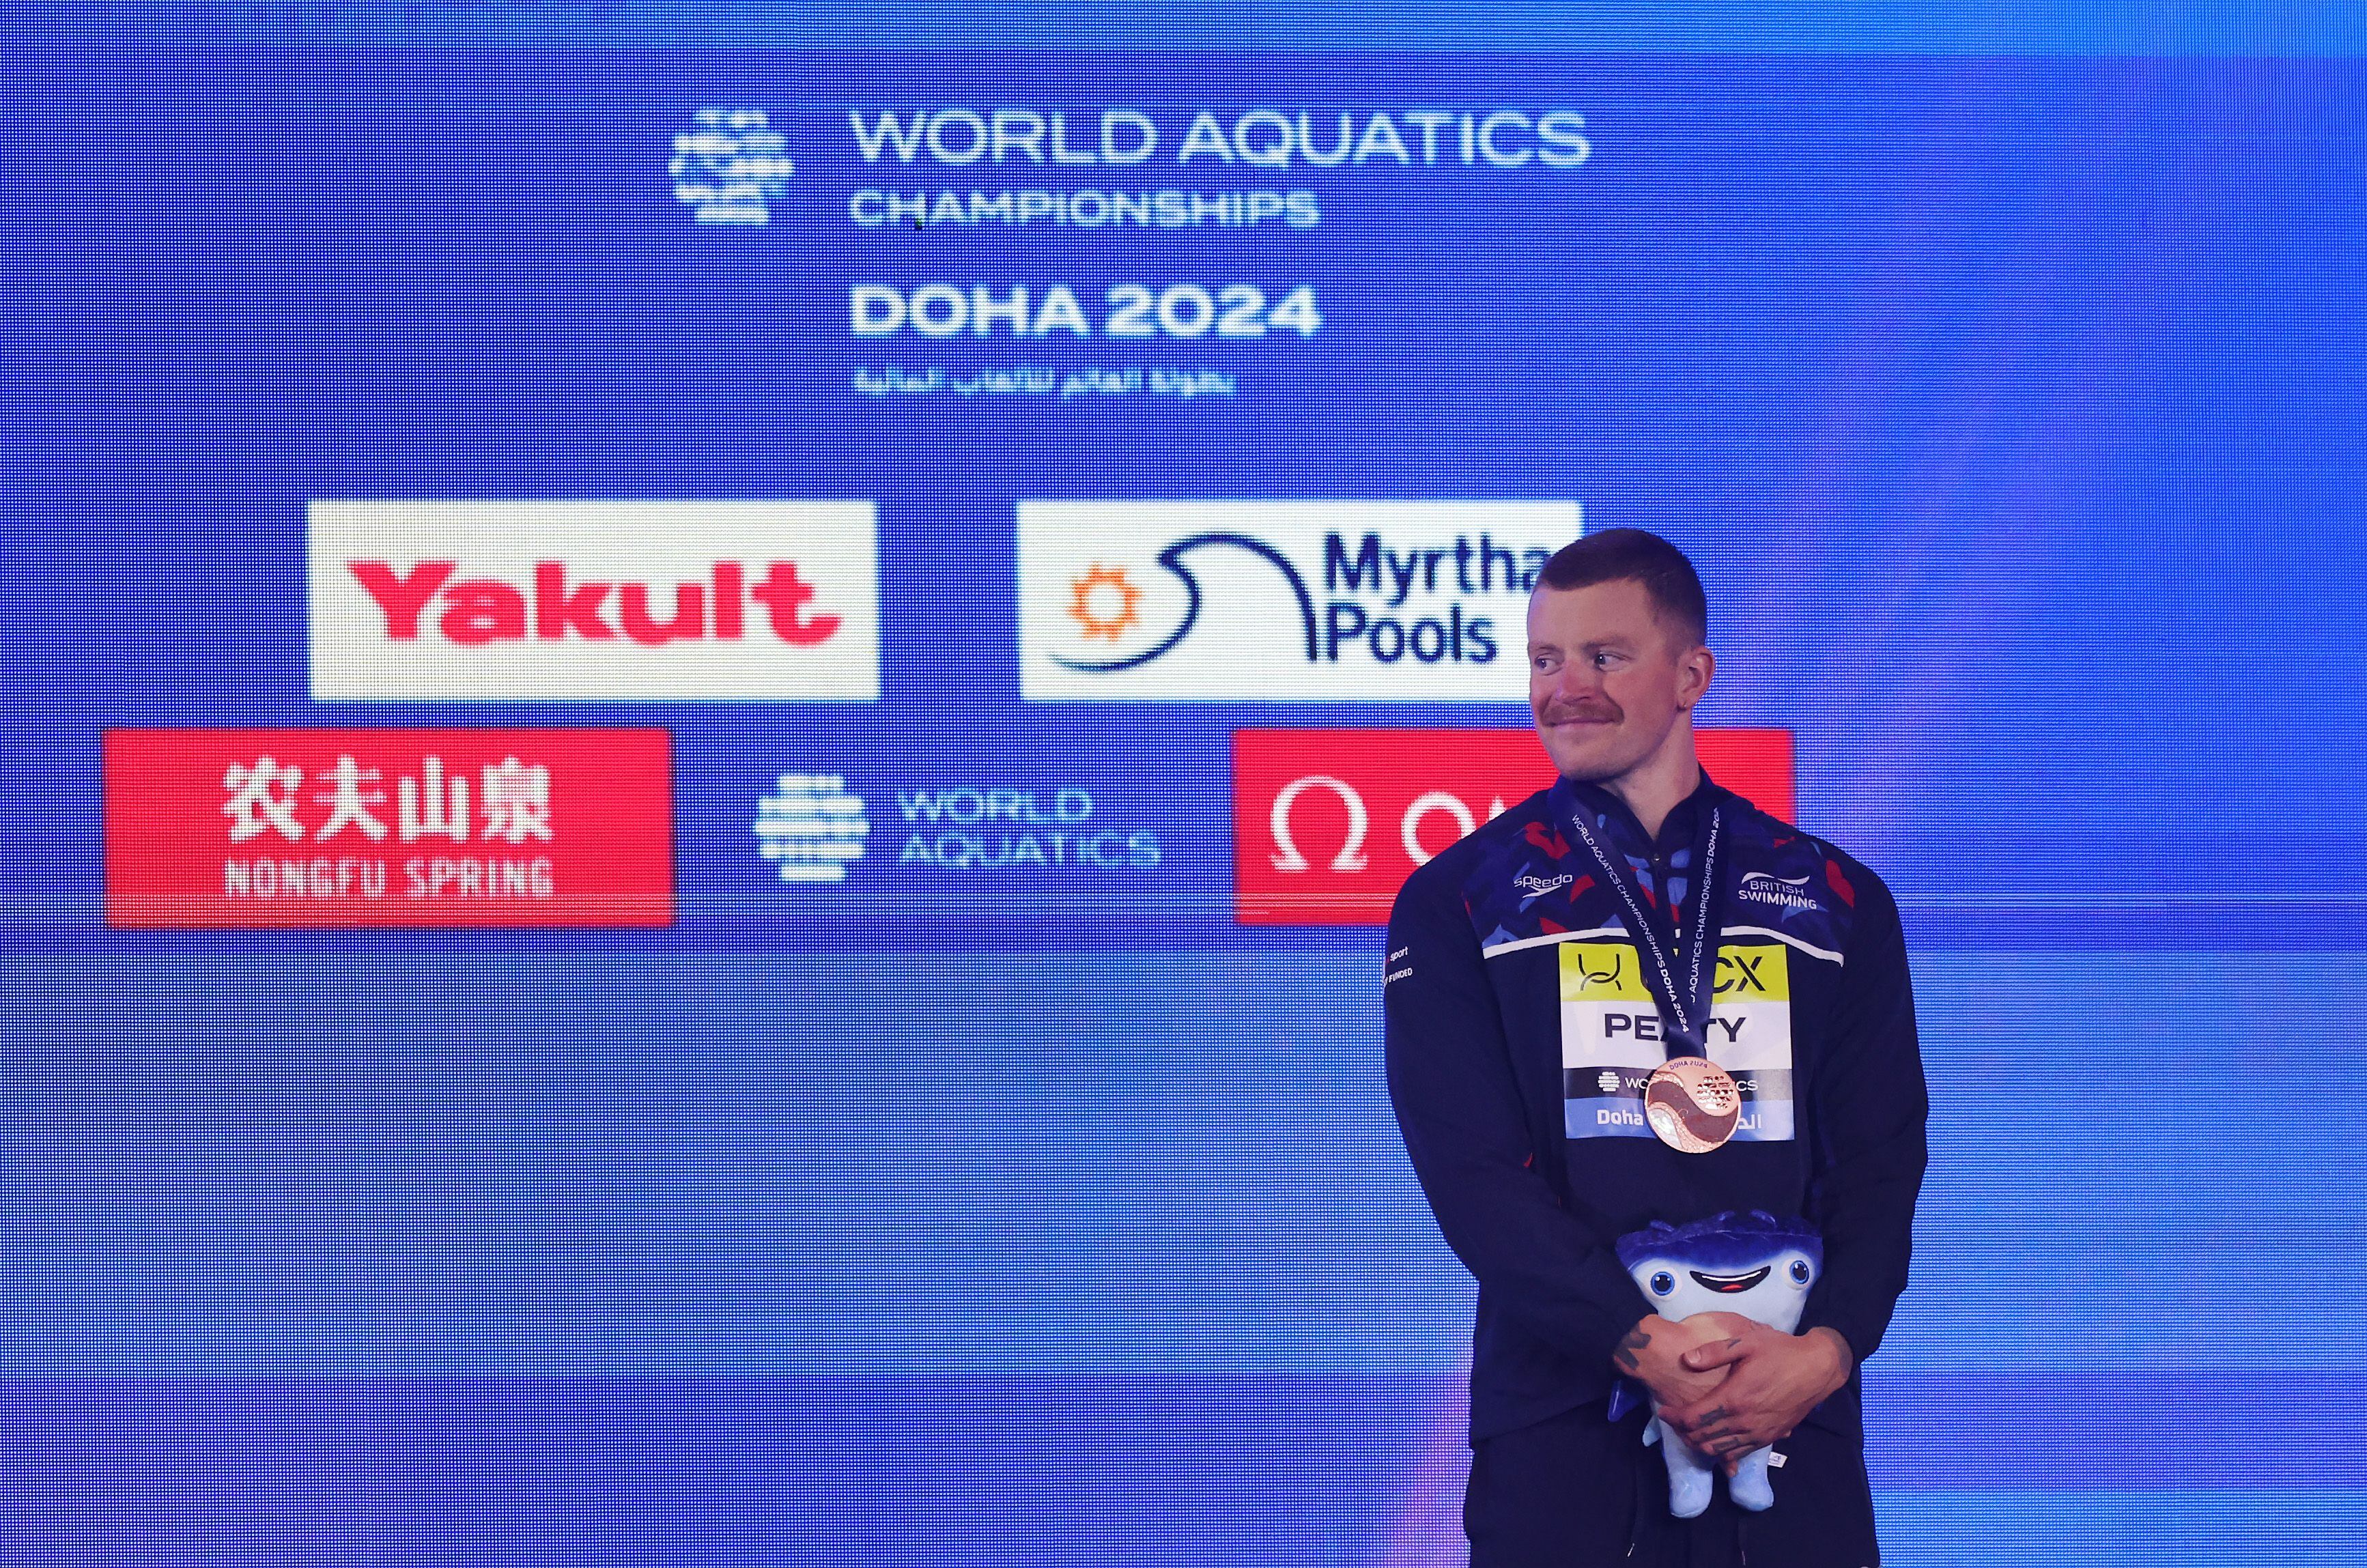 taghi ascari, clavadista de 100 años, logró medalla de oro en el mundial de natación 2024